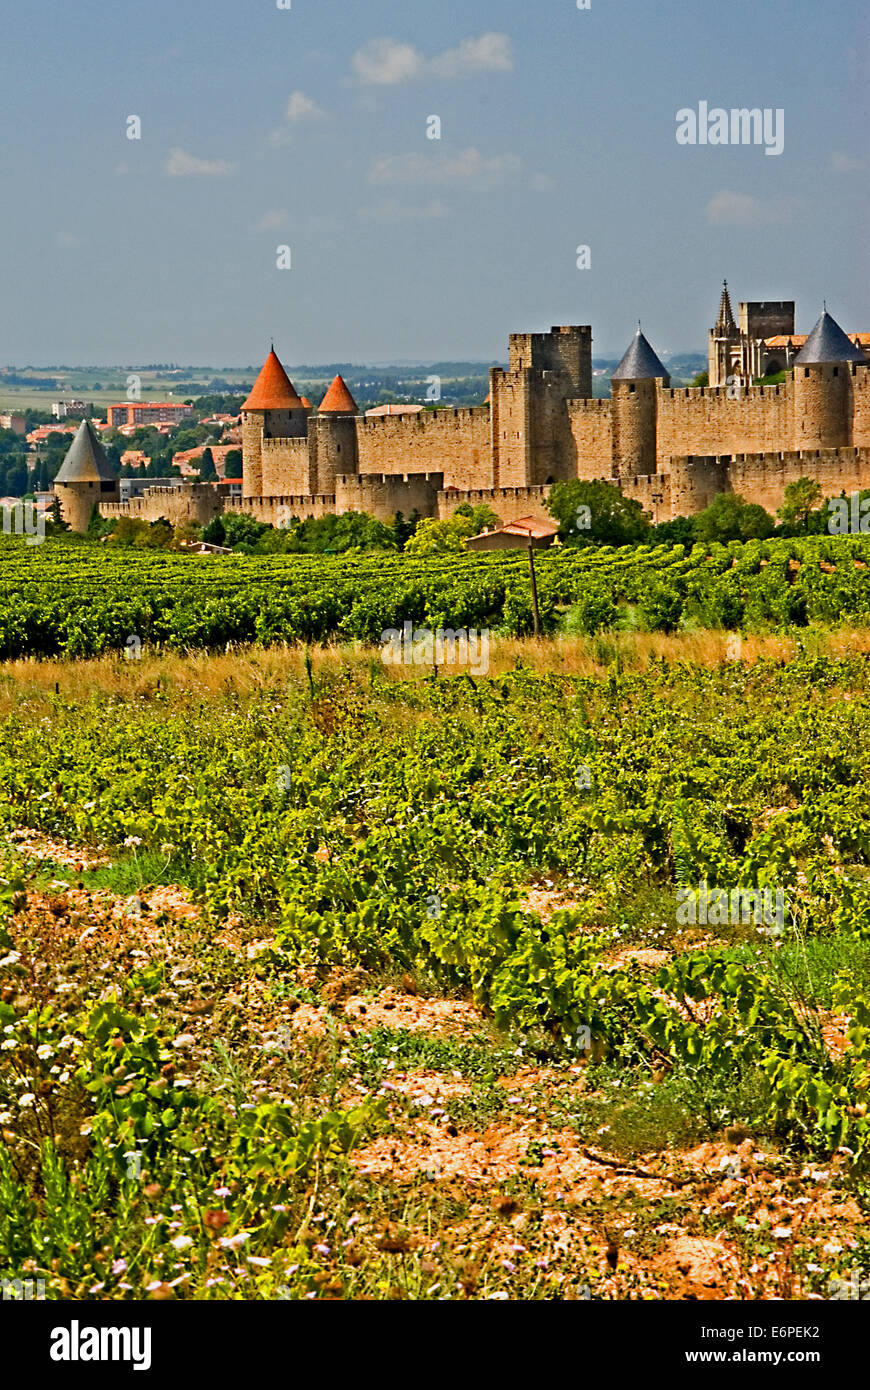 La vieille ville fortifiée de Carcassonne dans l'Aude est une région du sud-ouest de la France, les destinations touristiques. Banque D'Images